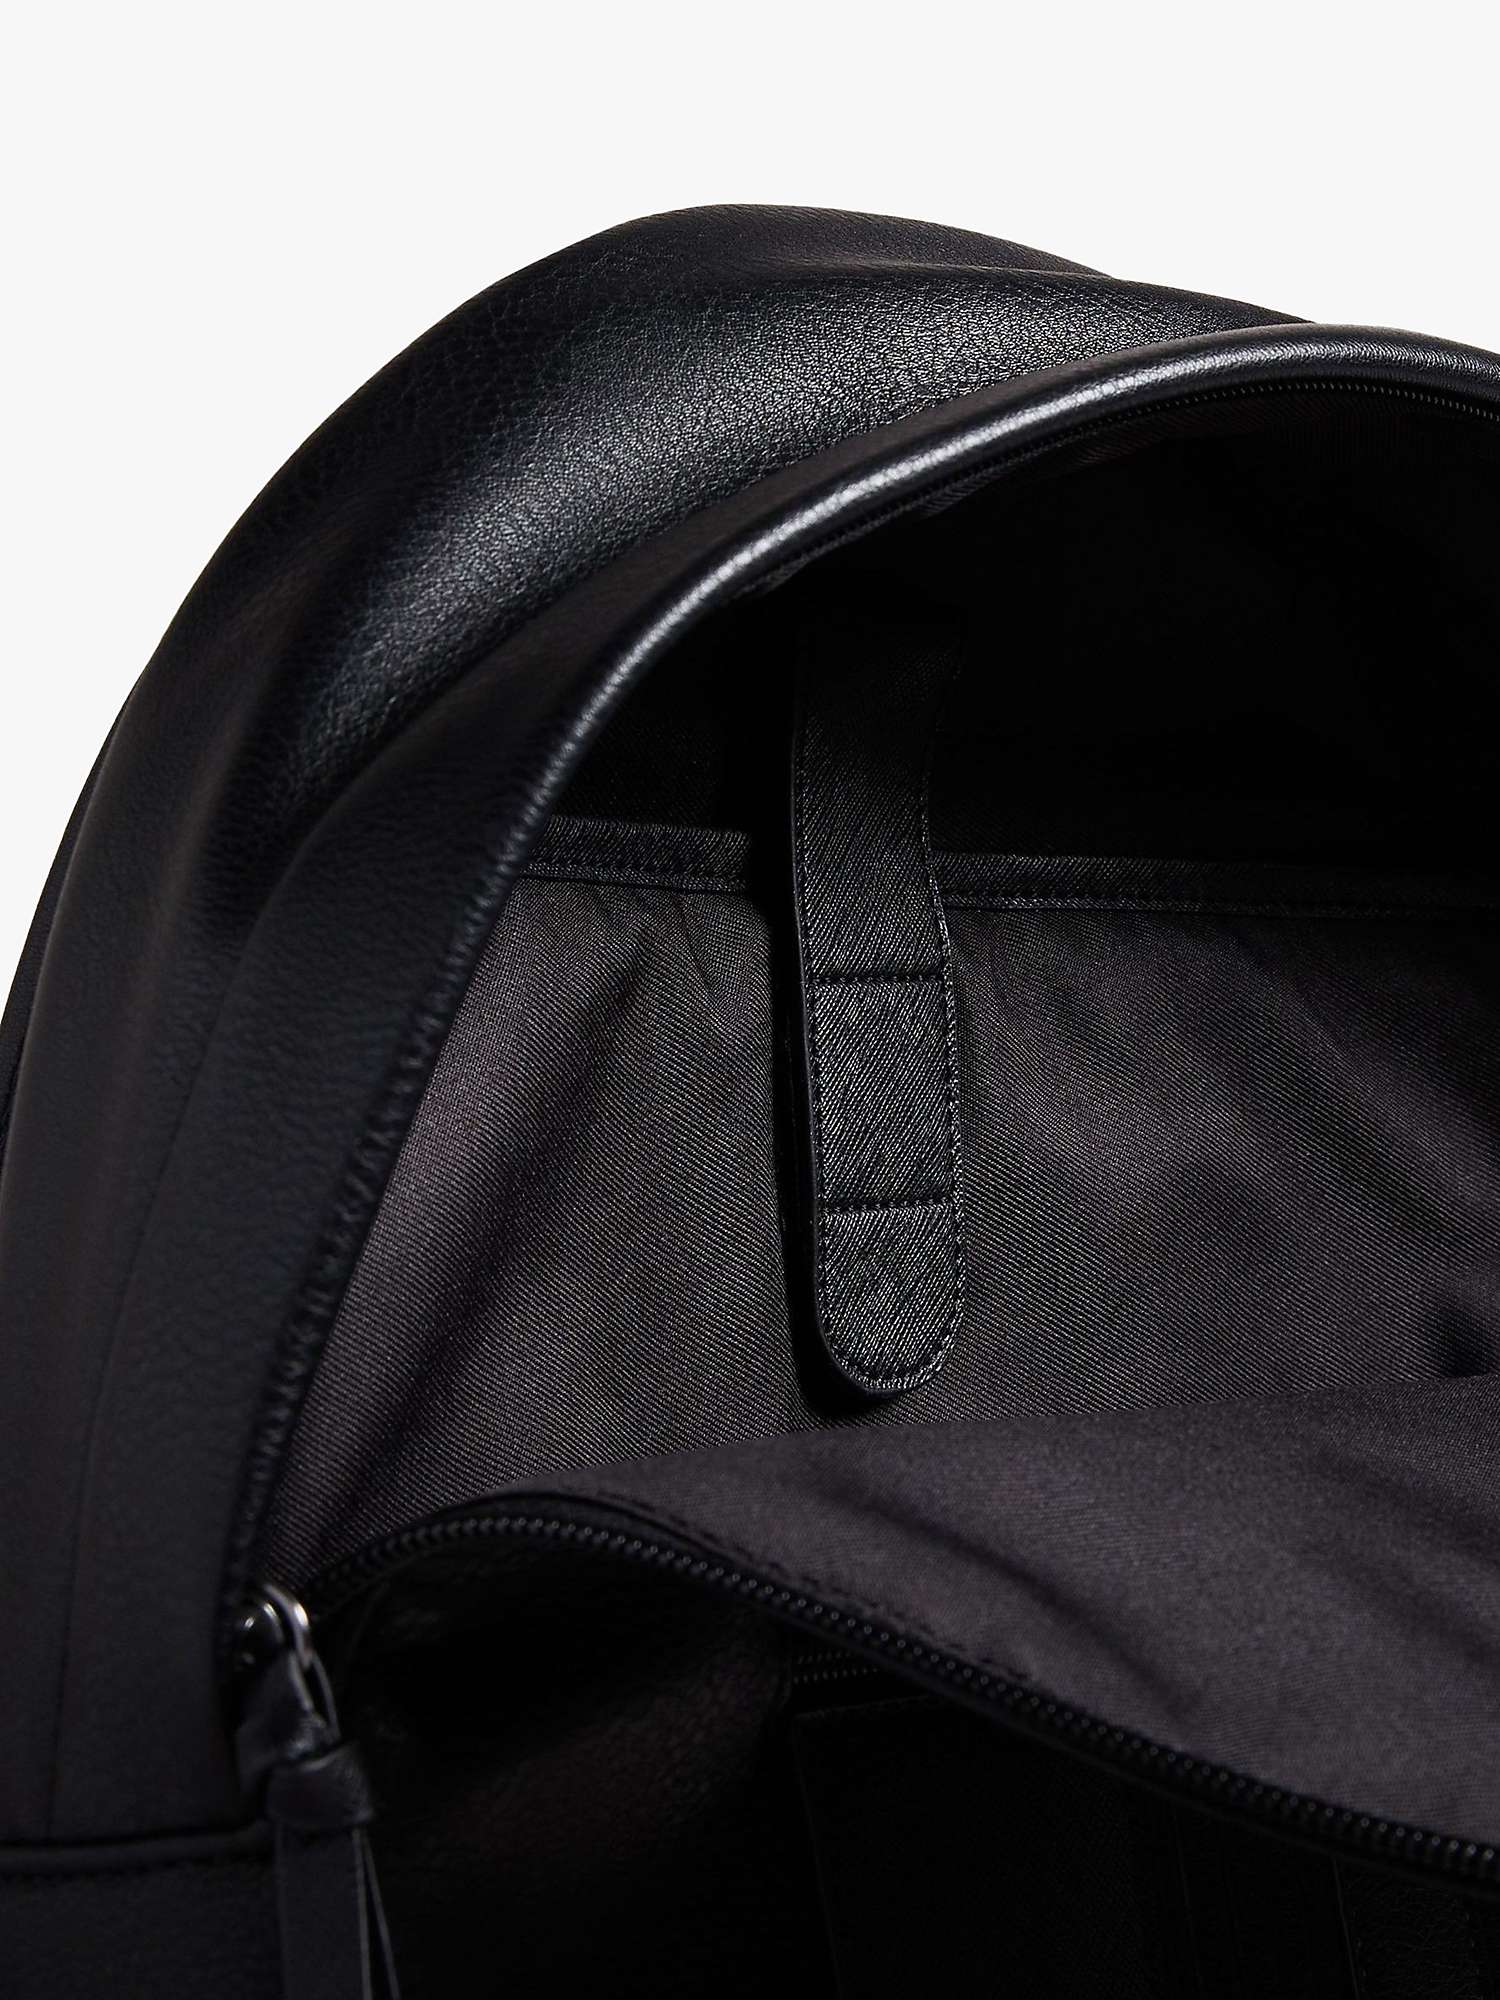 Buy Ted Baker Esentle Striped Backpack Online at johnlewis.com